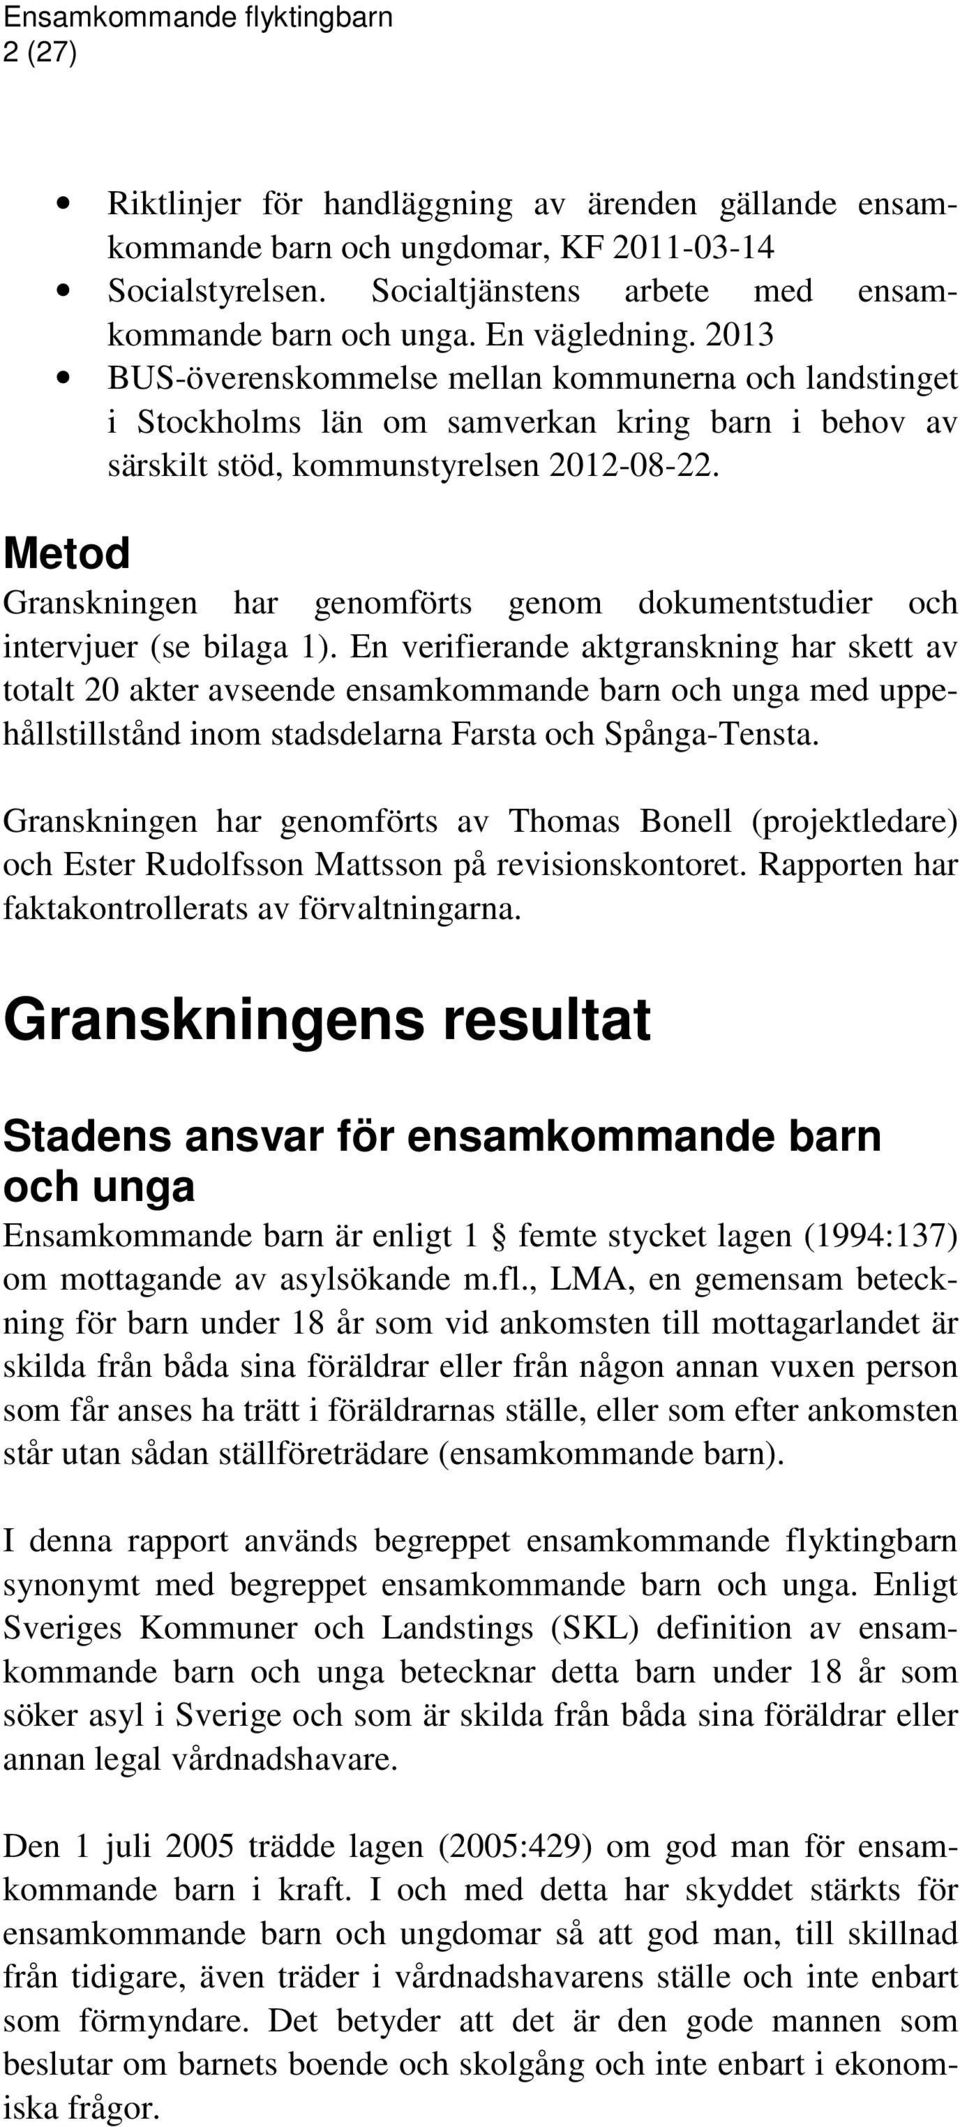 Metod Granskningen har genomförts genom dokumentstudier och intervjuer (se bilaga 1).